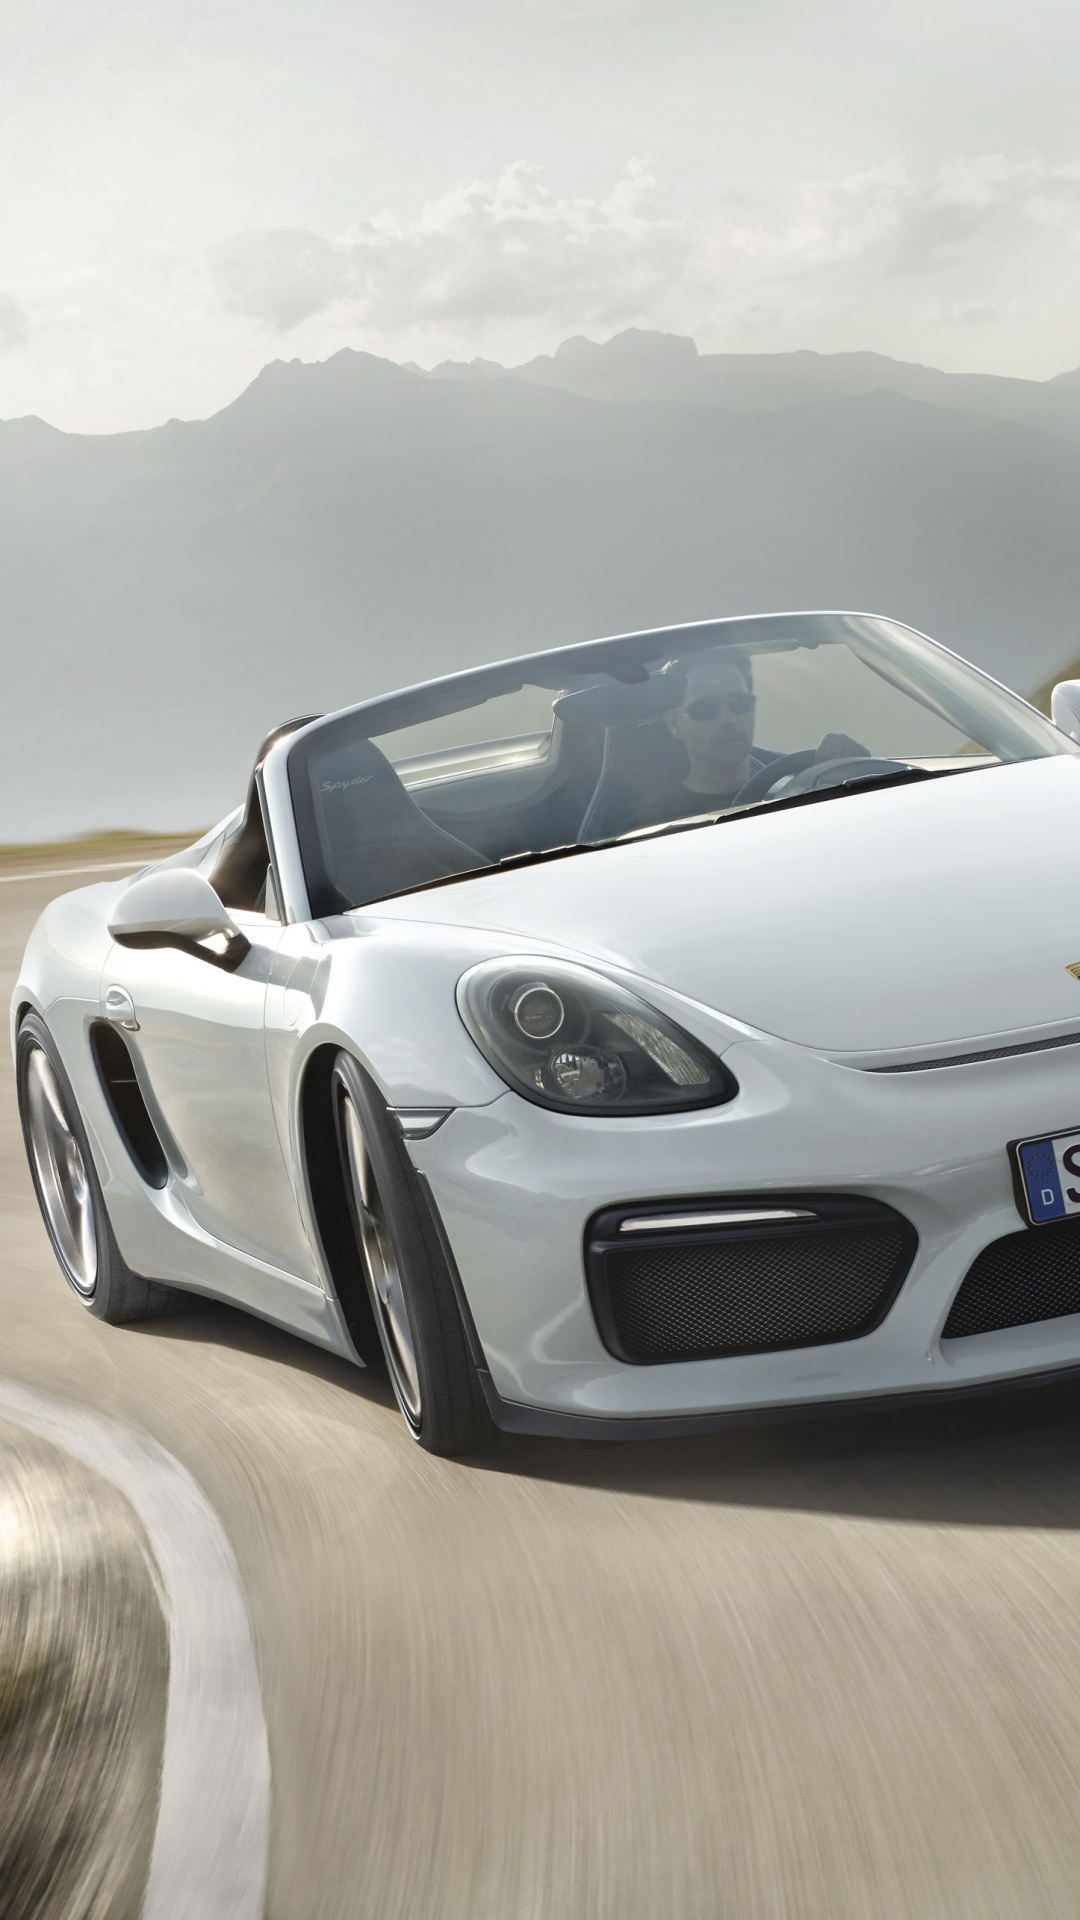 Porsche 911 Blanco en la Carretera Durante el Día. Wallpaper in 1080x1920 Resolution